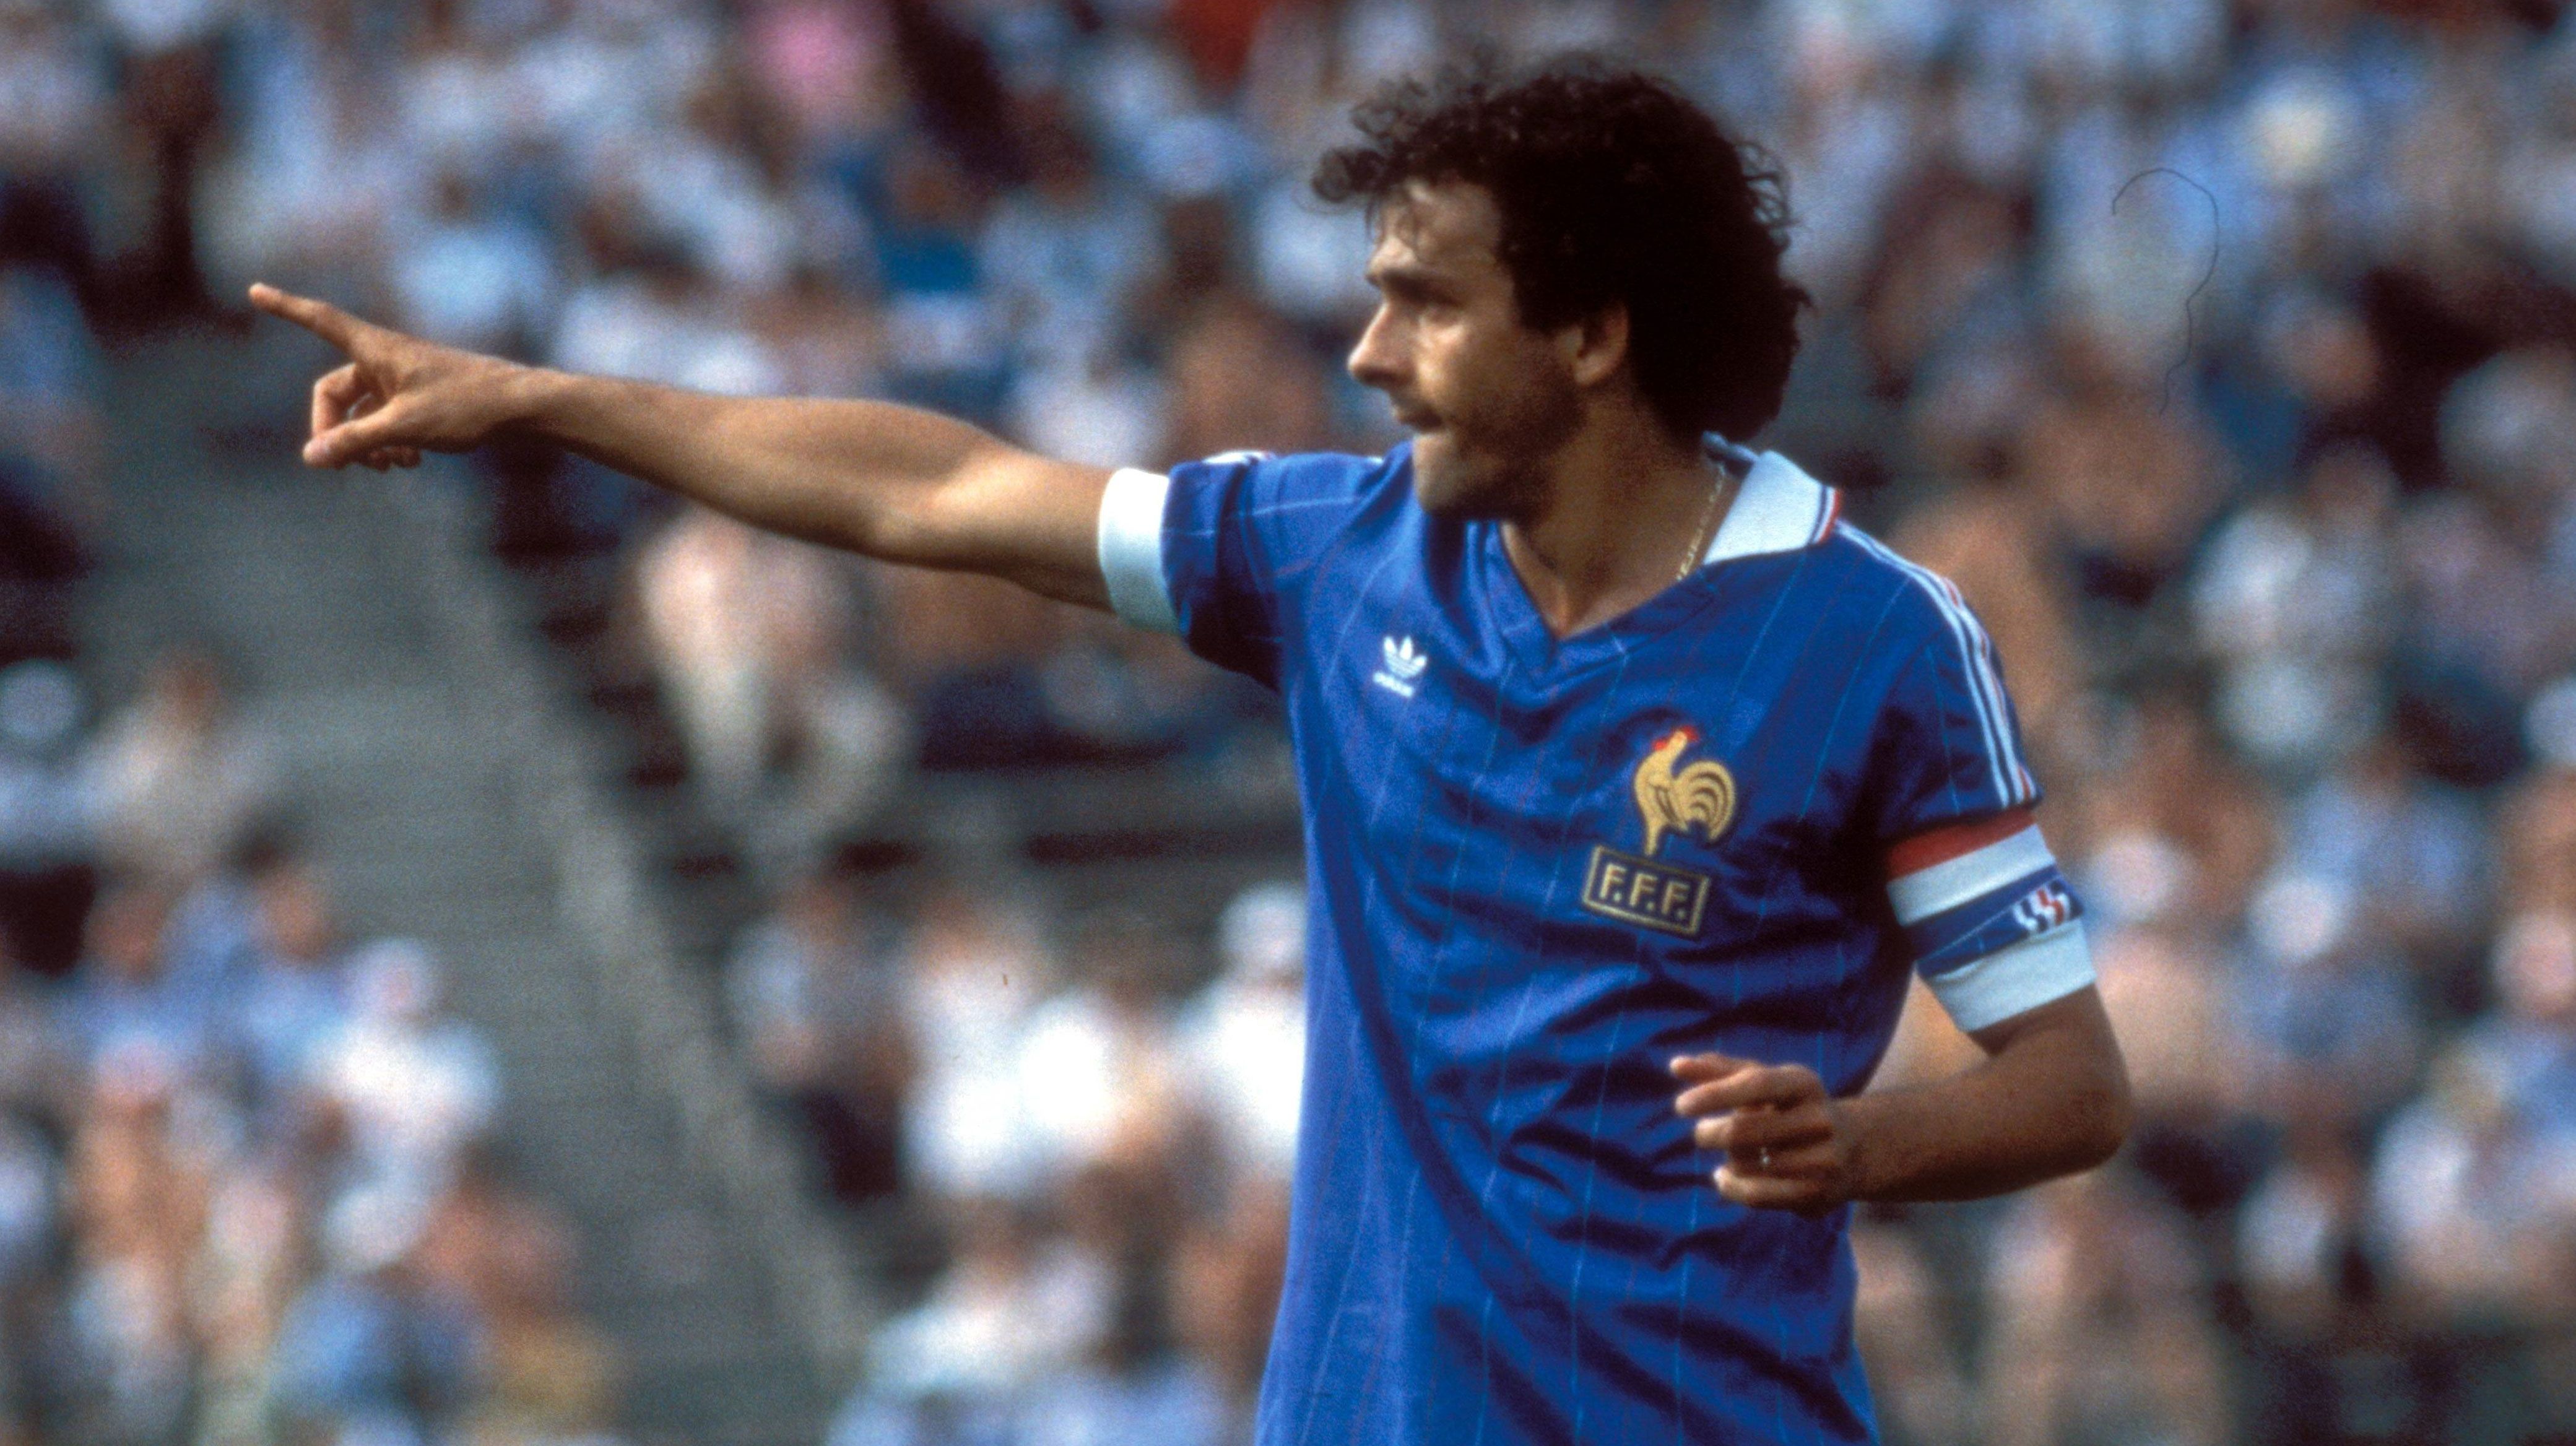 
                <strong>Michel Platini</strong><br>
                Der Franzose war einer der besten Nationalspieler seines Landes. Platini bestritt 72 Partien für Frankreich und führte das Team 1984 als Kapitän zum EM-Titel. 1987 beendete er seine aktive Laufbahn, kehrte jedoch nach einem Jahr nochmals auf den Rasen zurück - im Trikot der Nationalmannschaft von Kuwait. Auf Einladung des Emirs spielte er 21 Minuten in einem Freundschaftsspiel gegen die Sowjetunion.
              